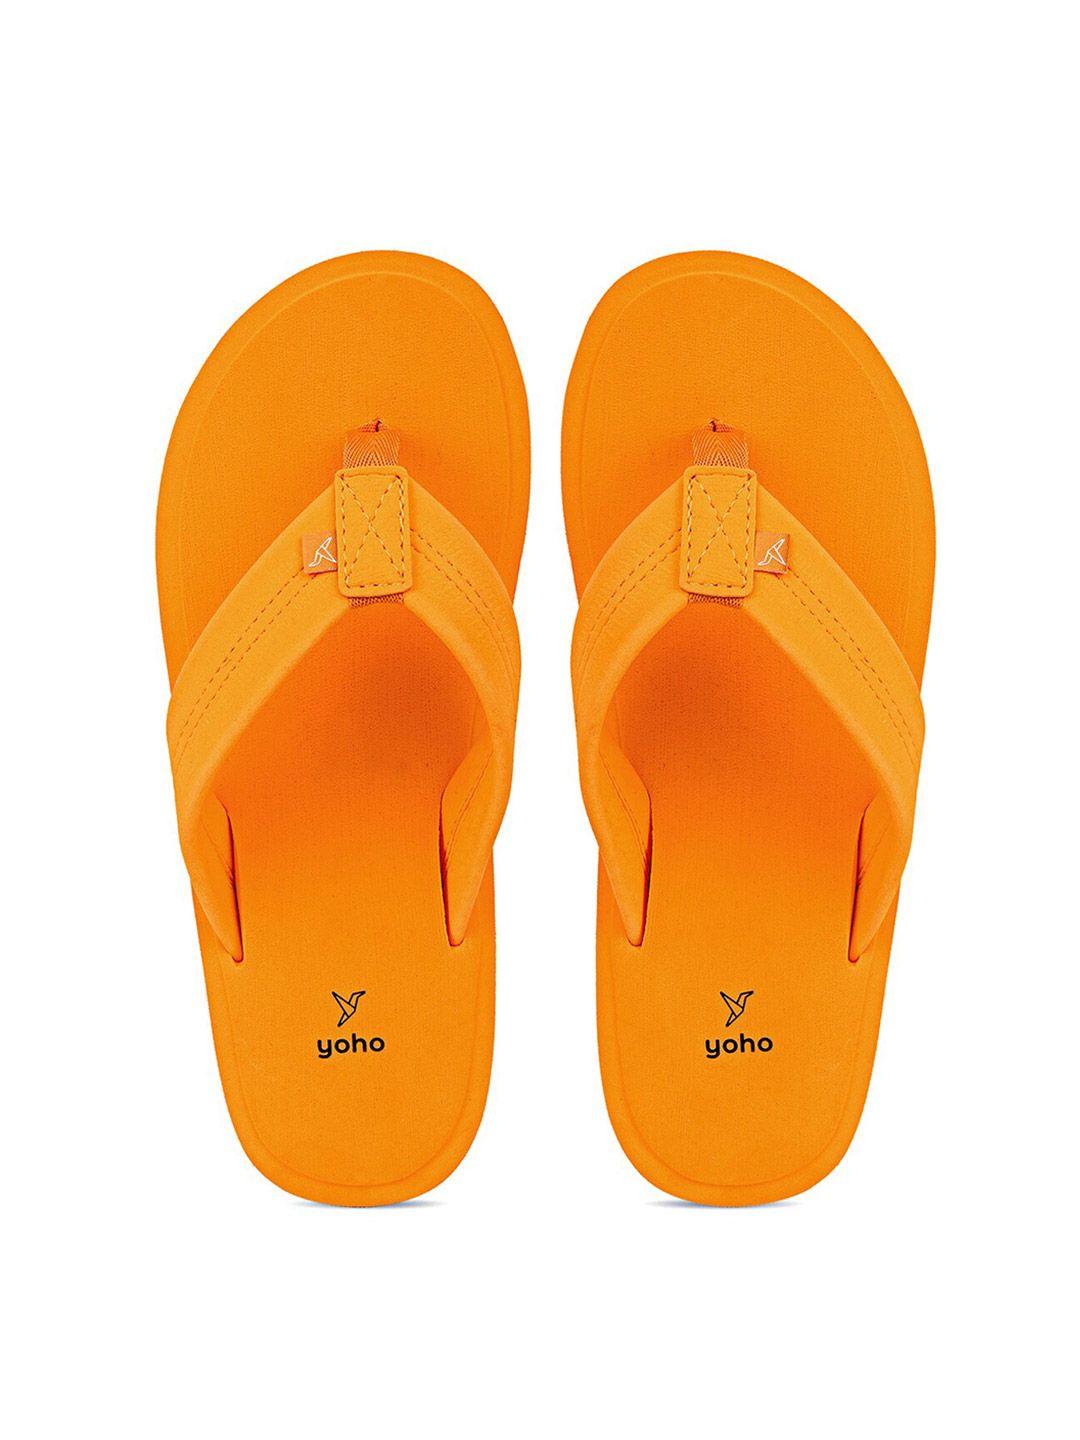 yoho men yellow rubber thong flip-flops